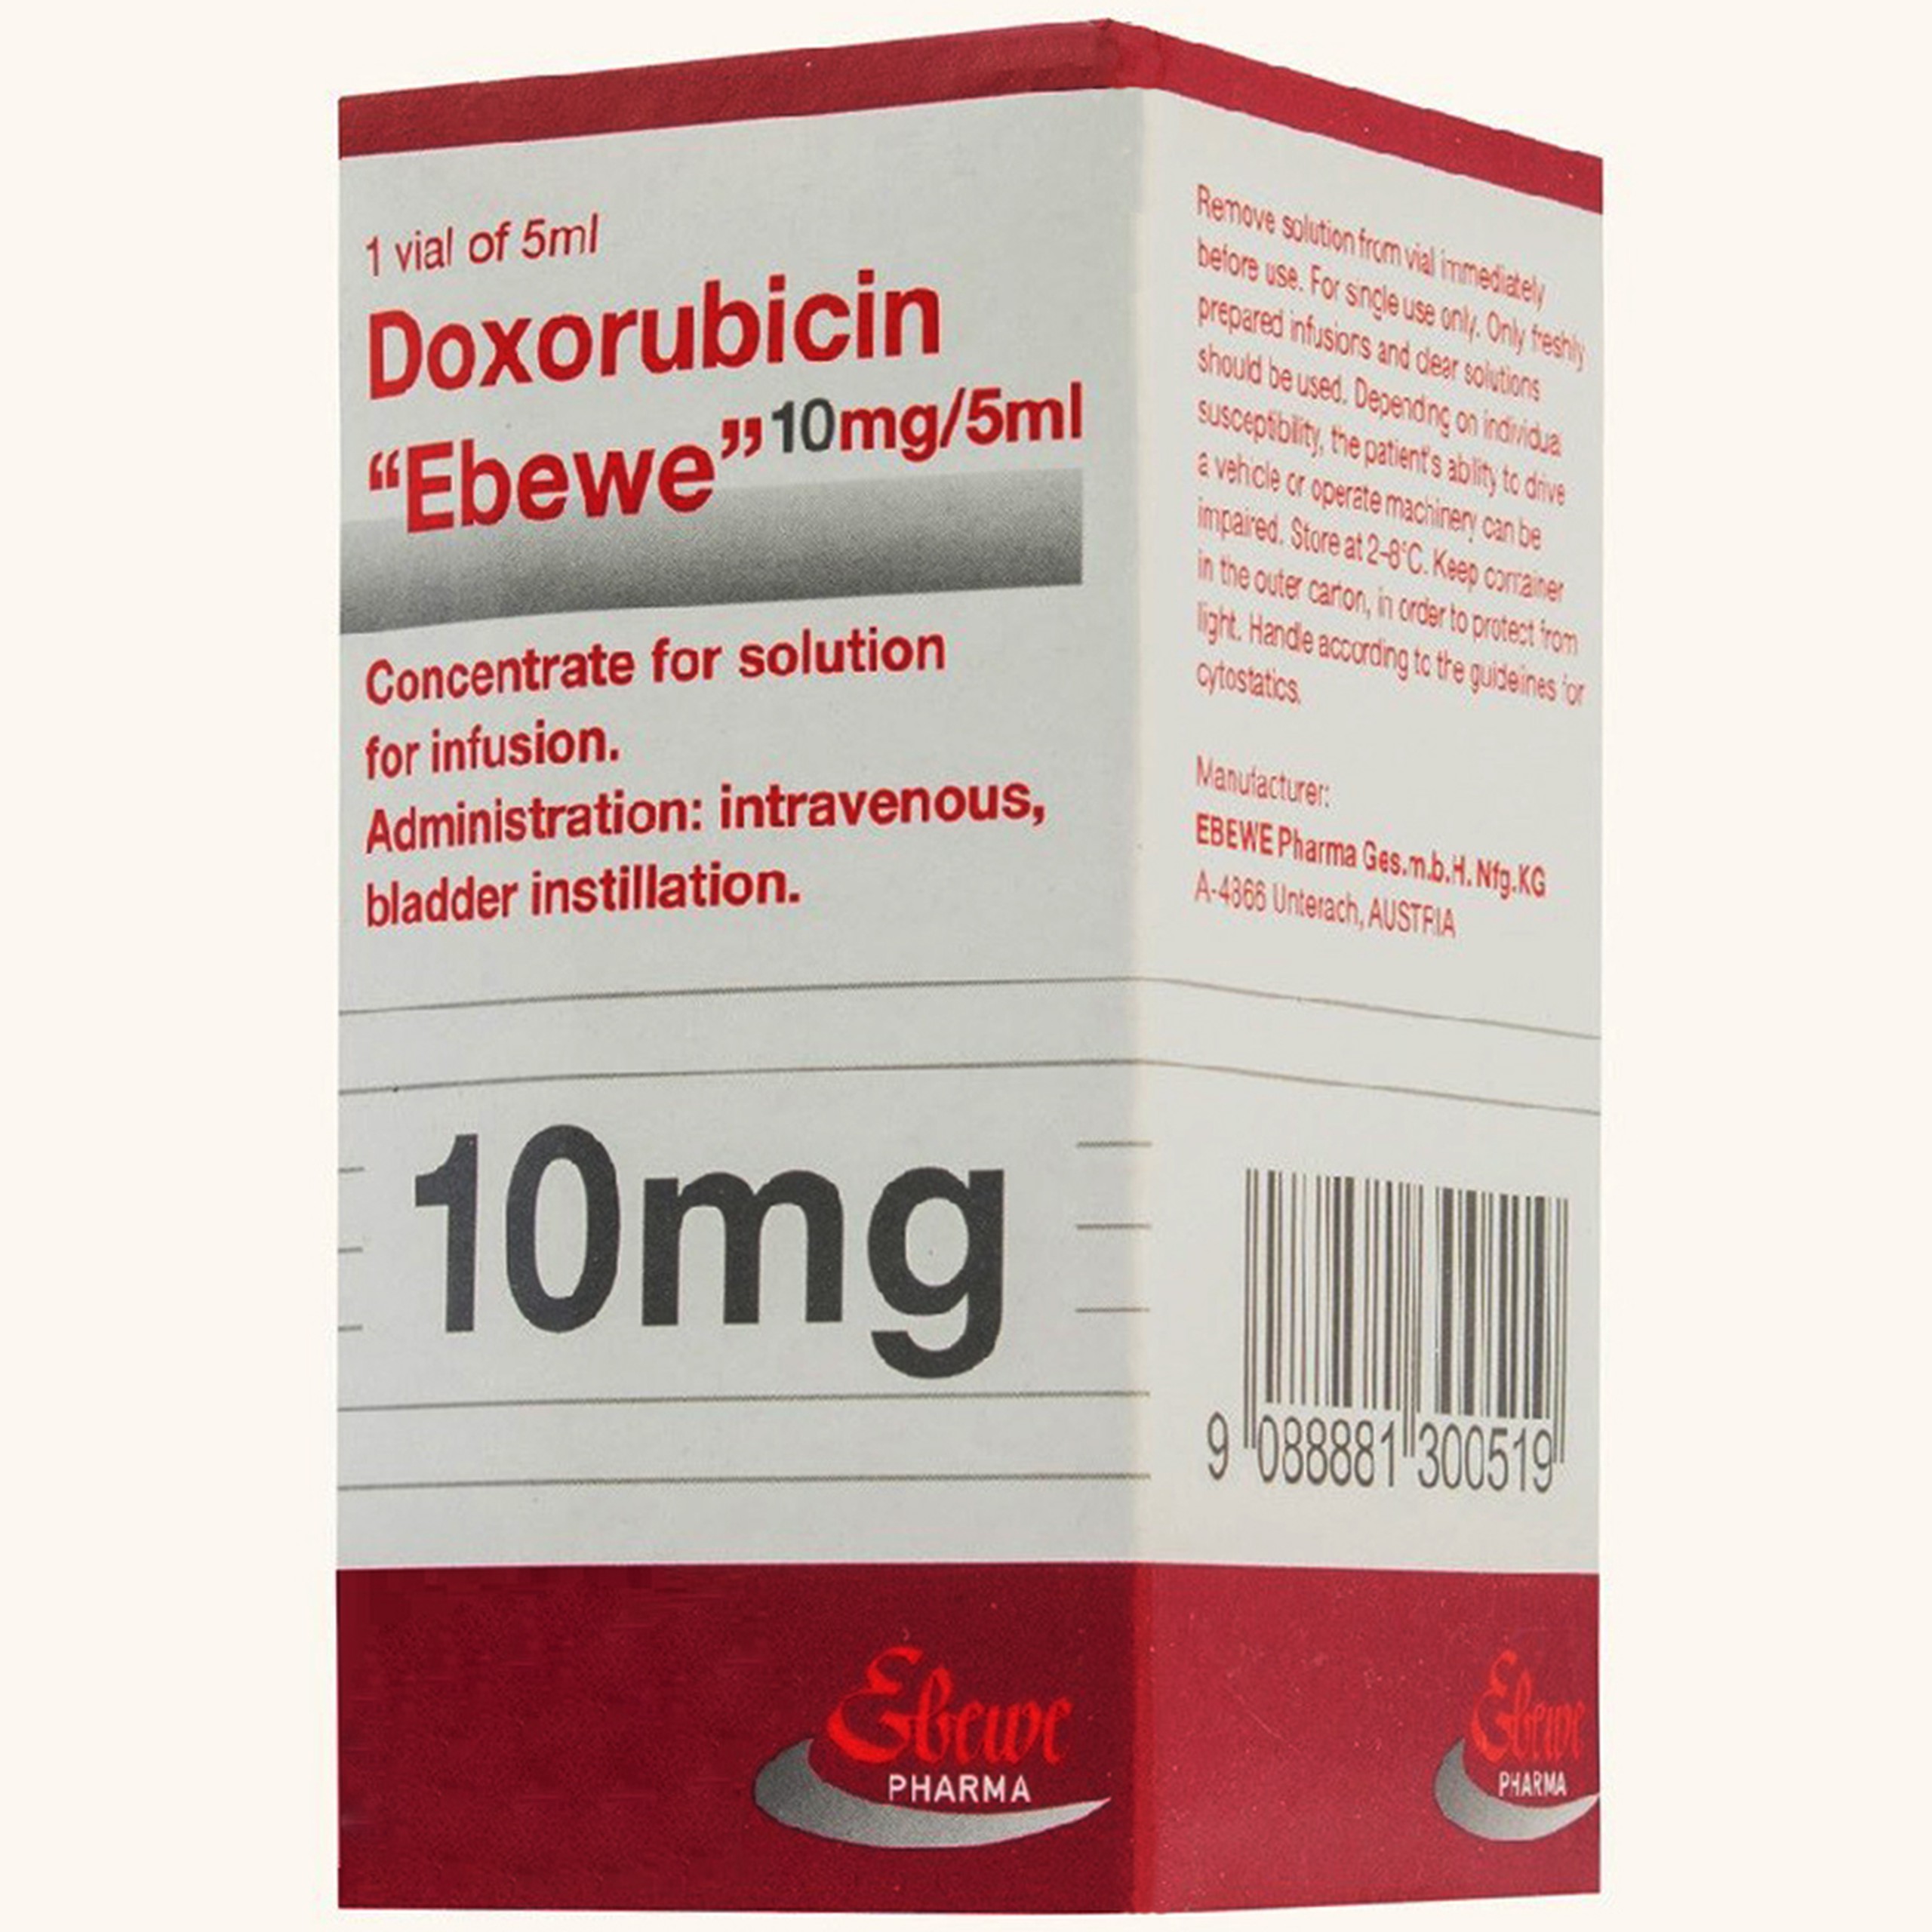 Thuốc Doxorubicin Ebewe 50mg/25ml điều trị các khối u đặc, ung thư hệ tạo máu và hệ lympho